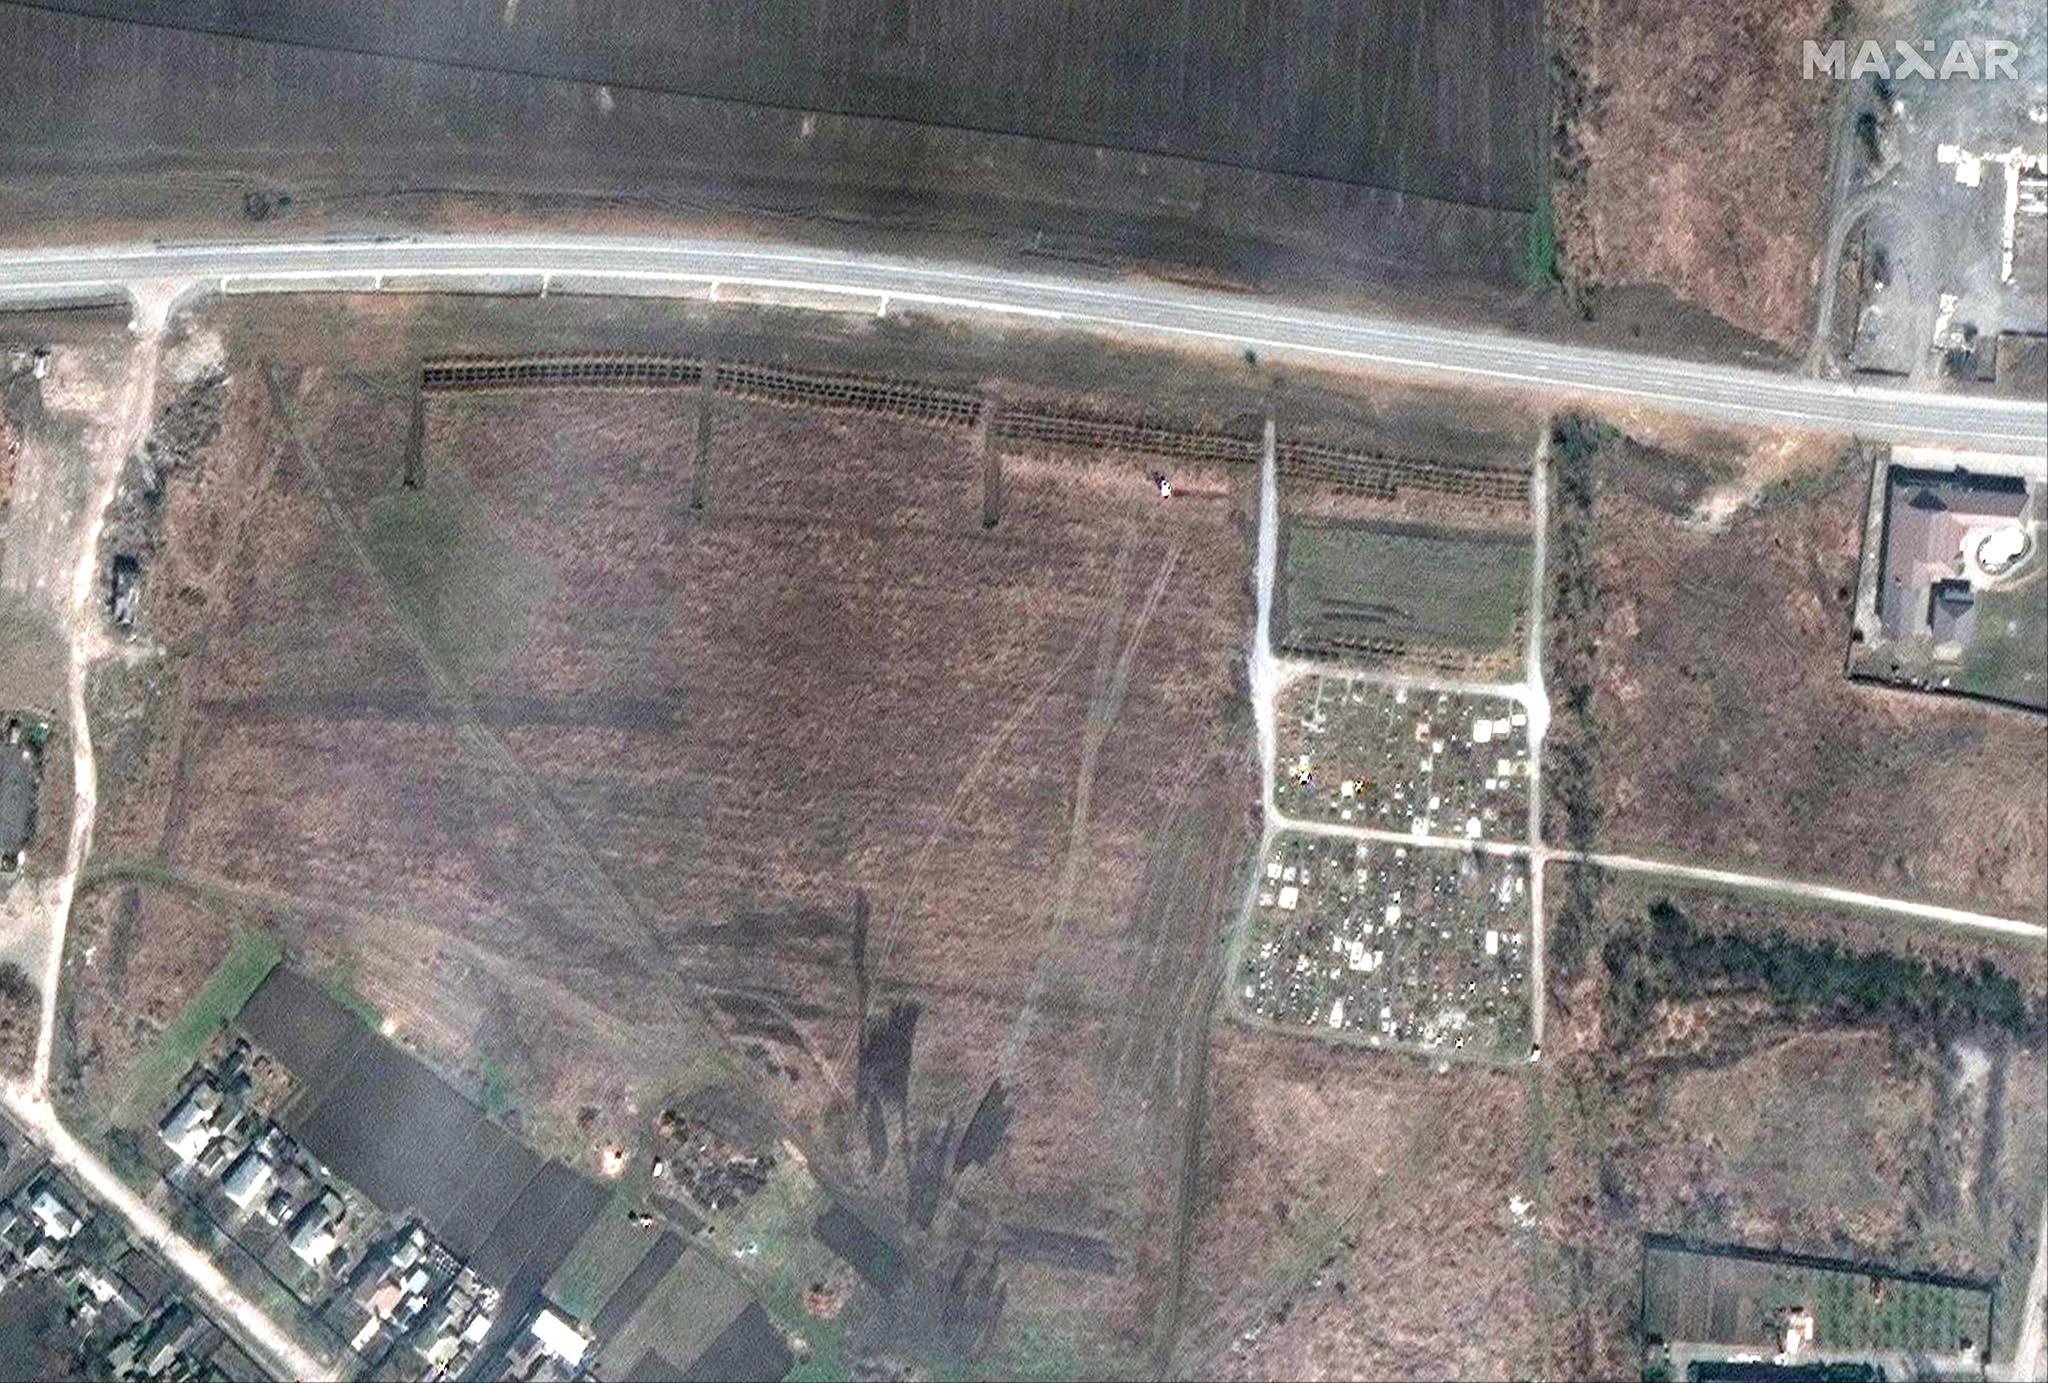 Maxarin julkaisema satelliittikuva, jossa väitetysti näkyy joukkohautoja Mariupolin läheisyydessä.